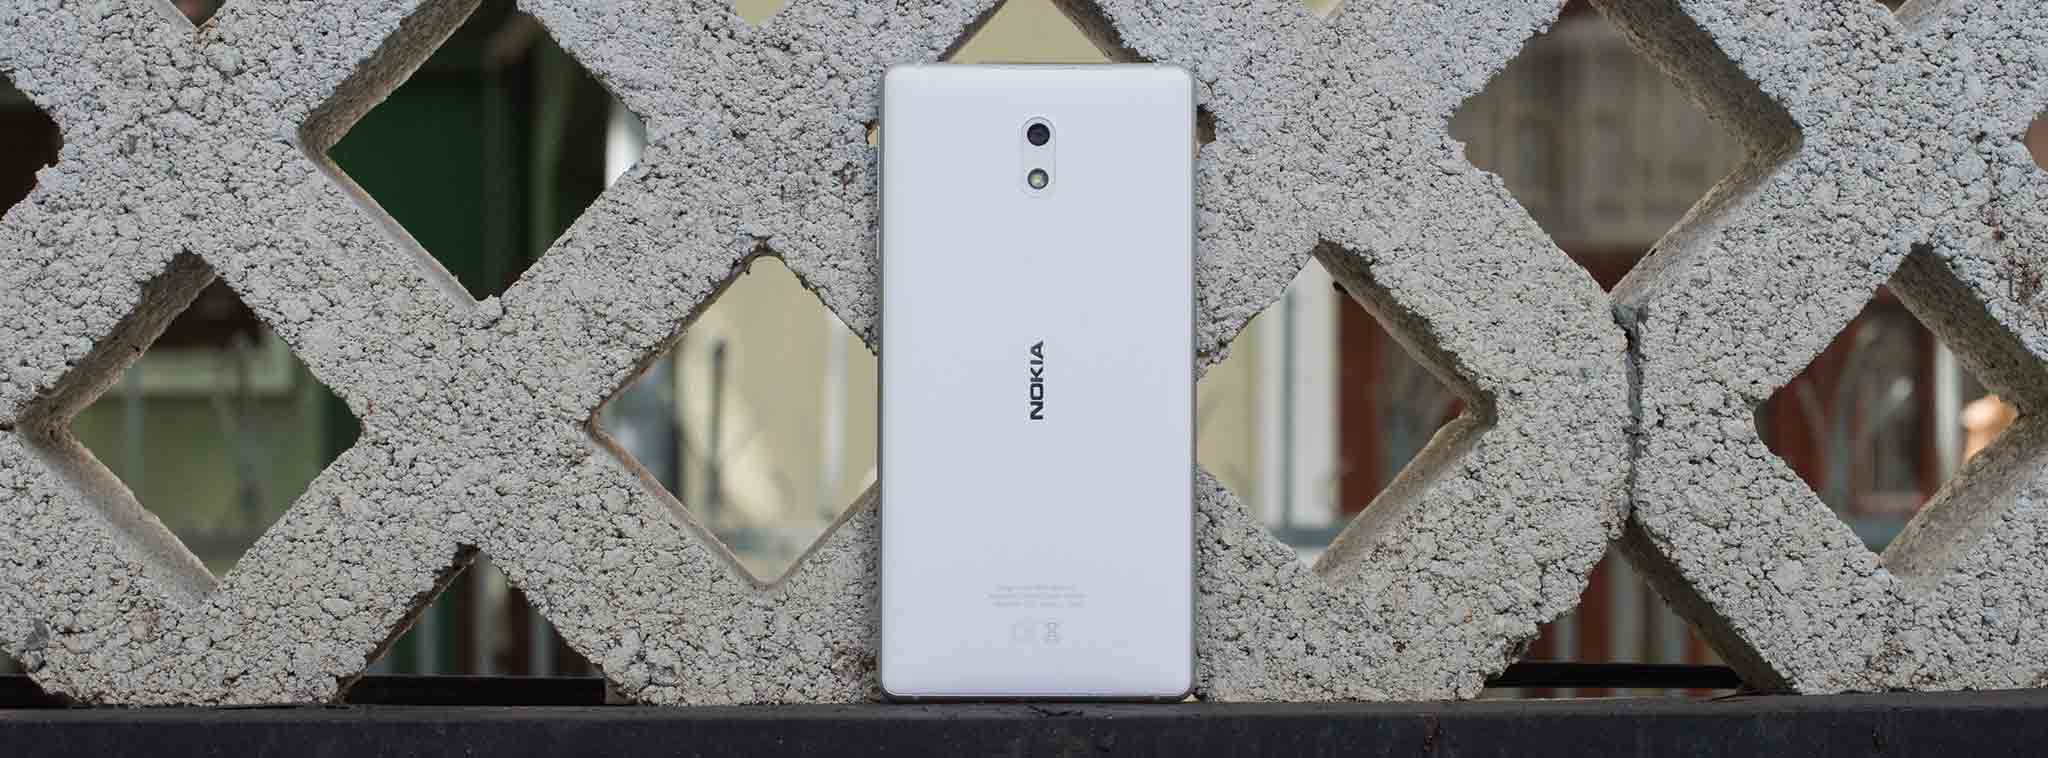 Tất cả điện thoại Nokia do HMD Global sản xuất sẽ được cập nhật Android O